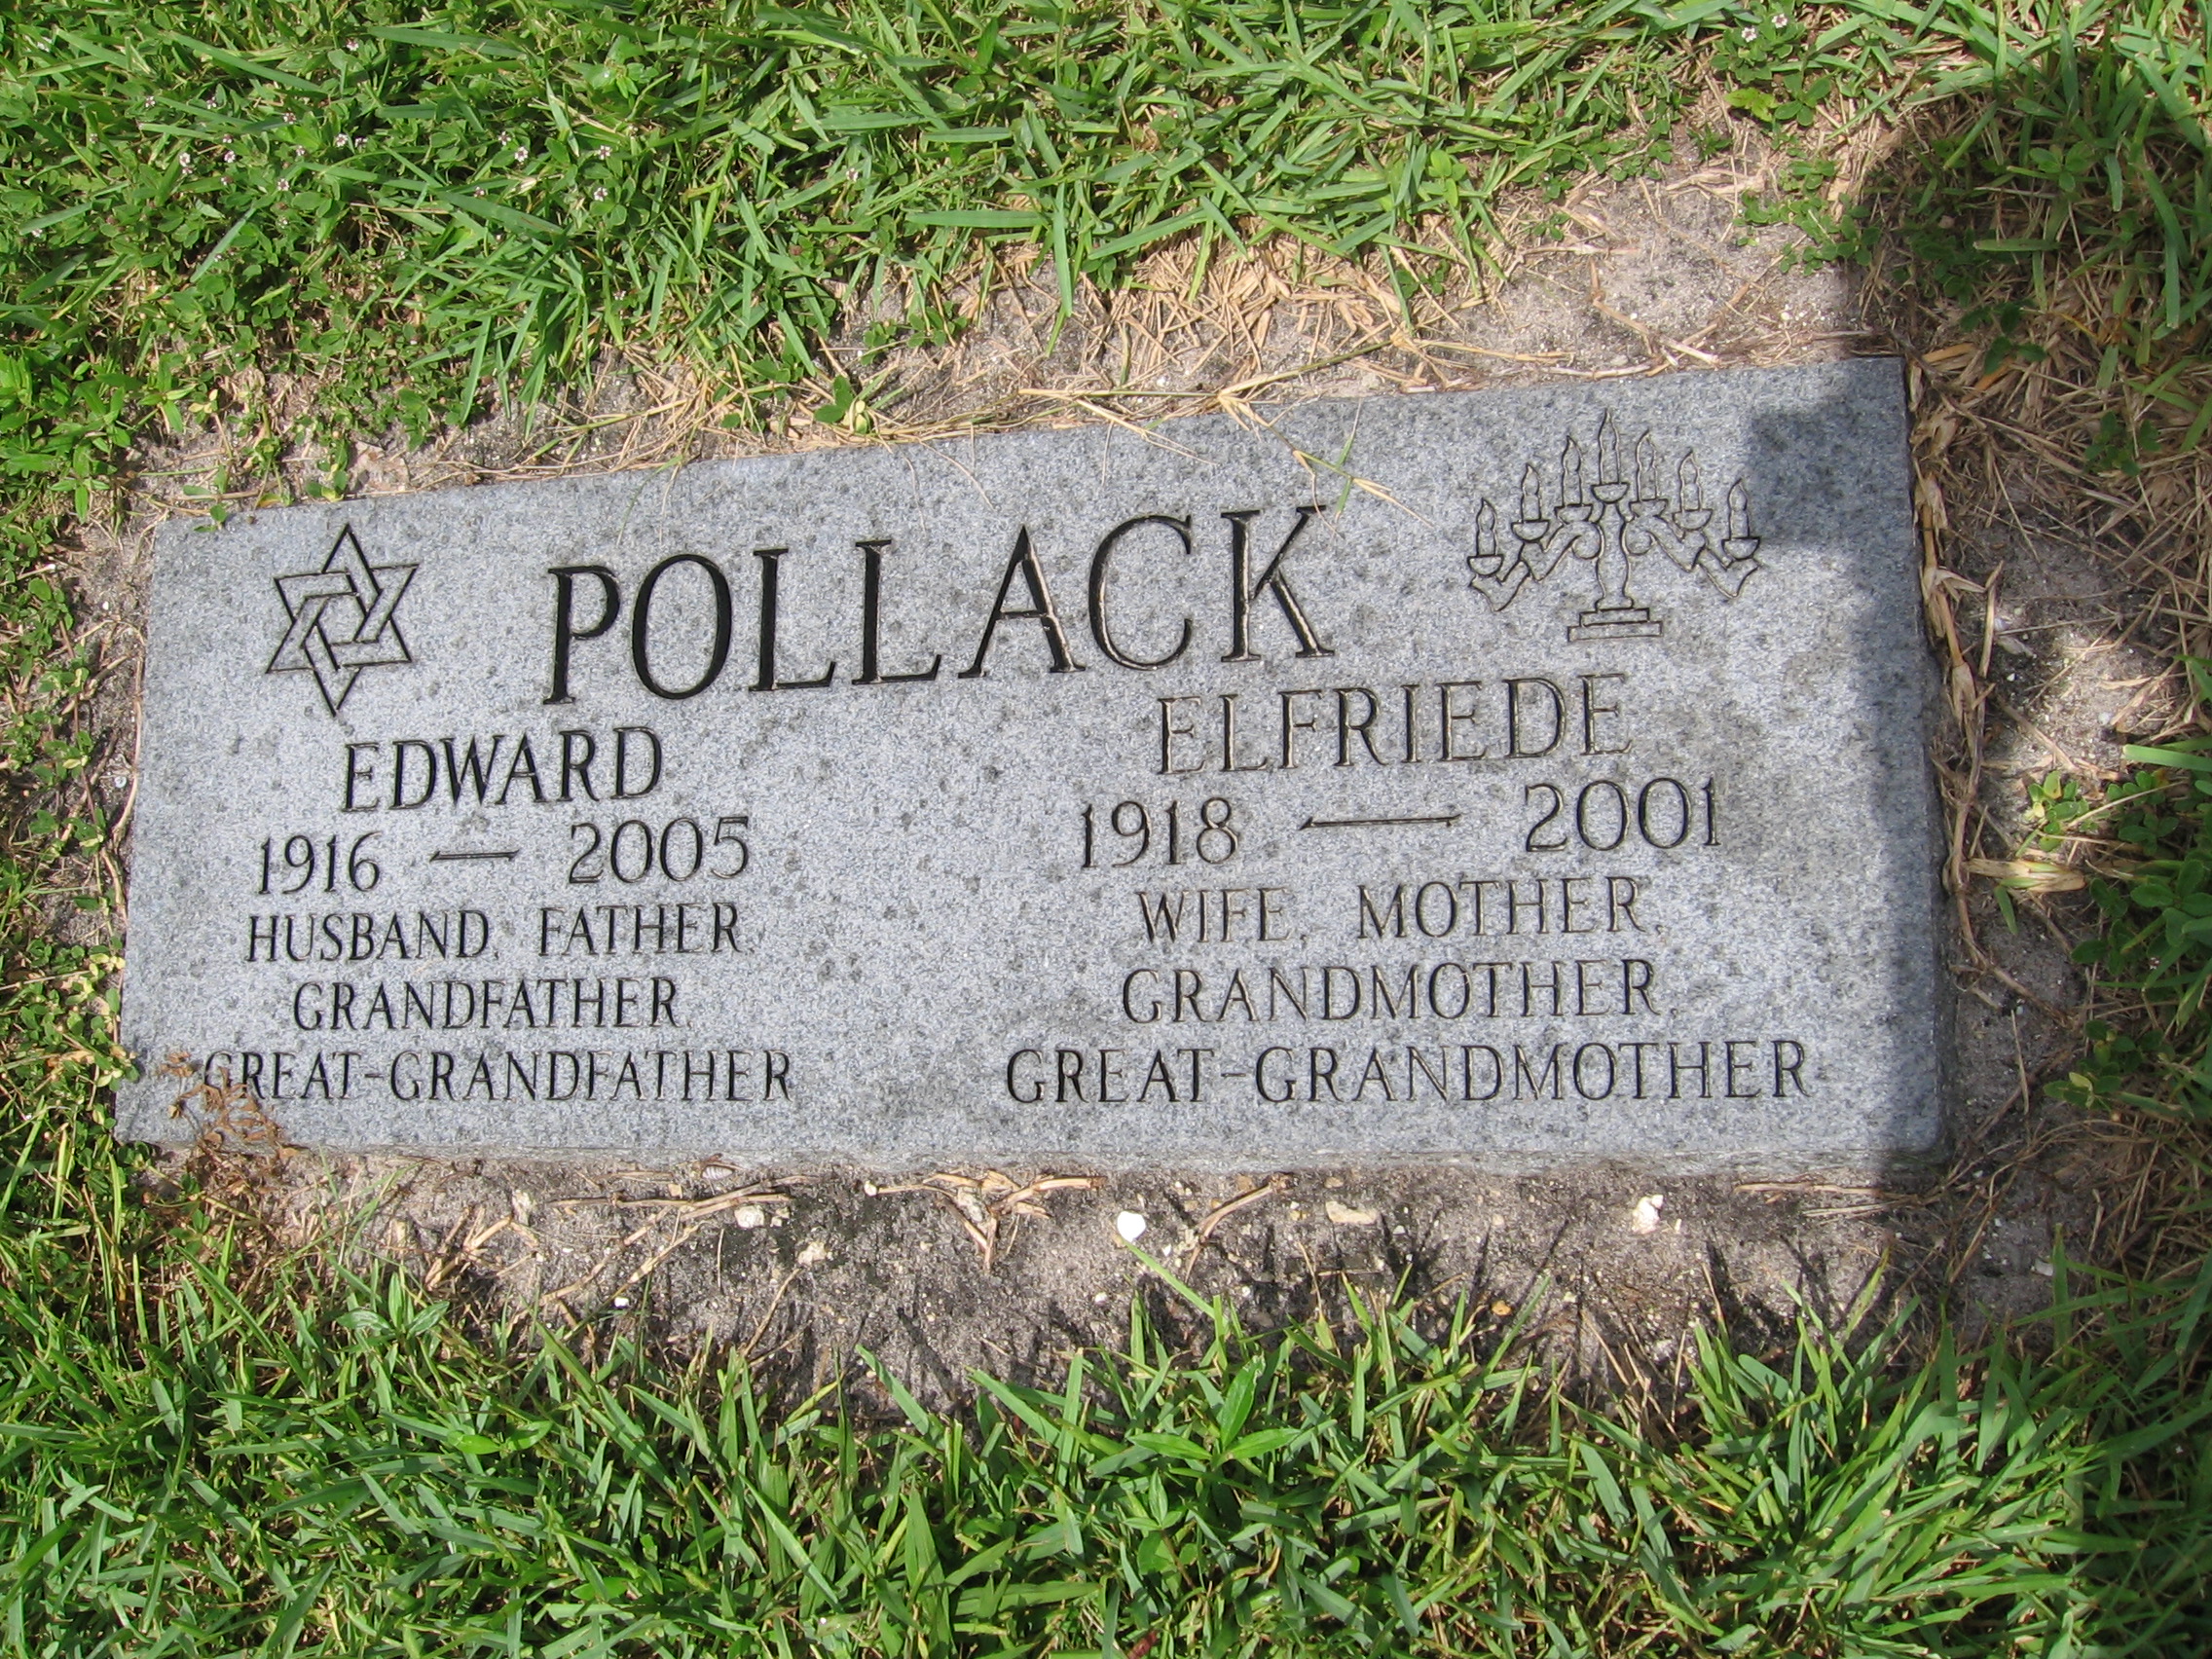 Edward Pollack